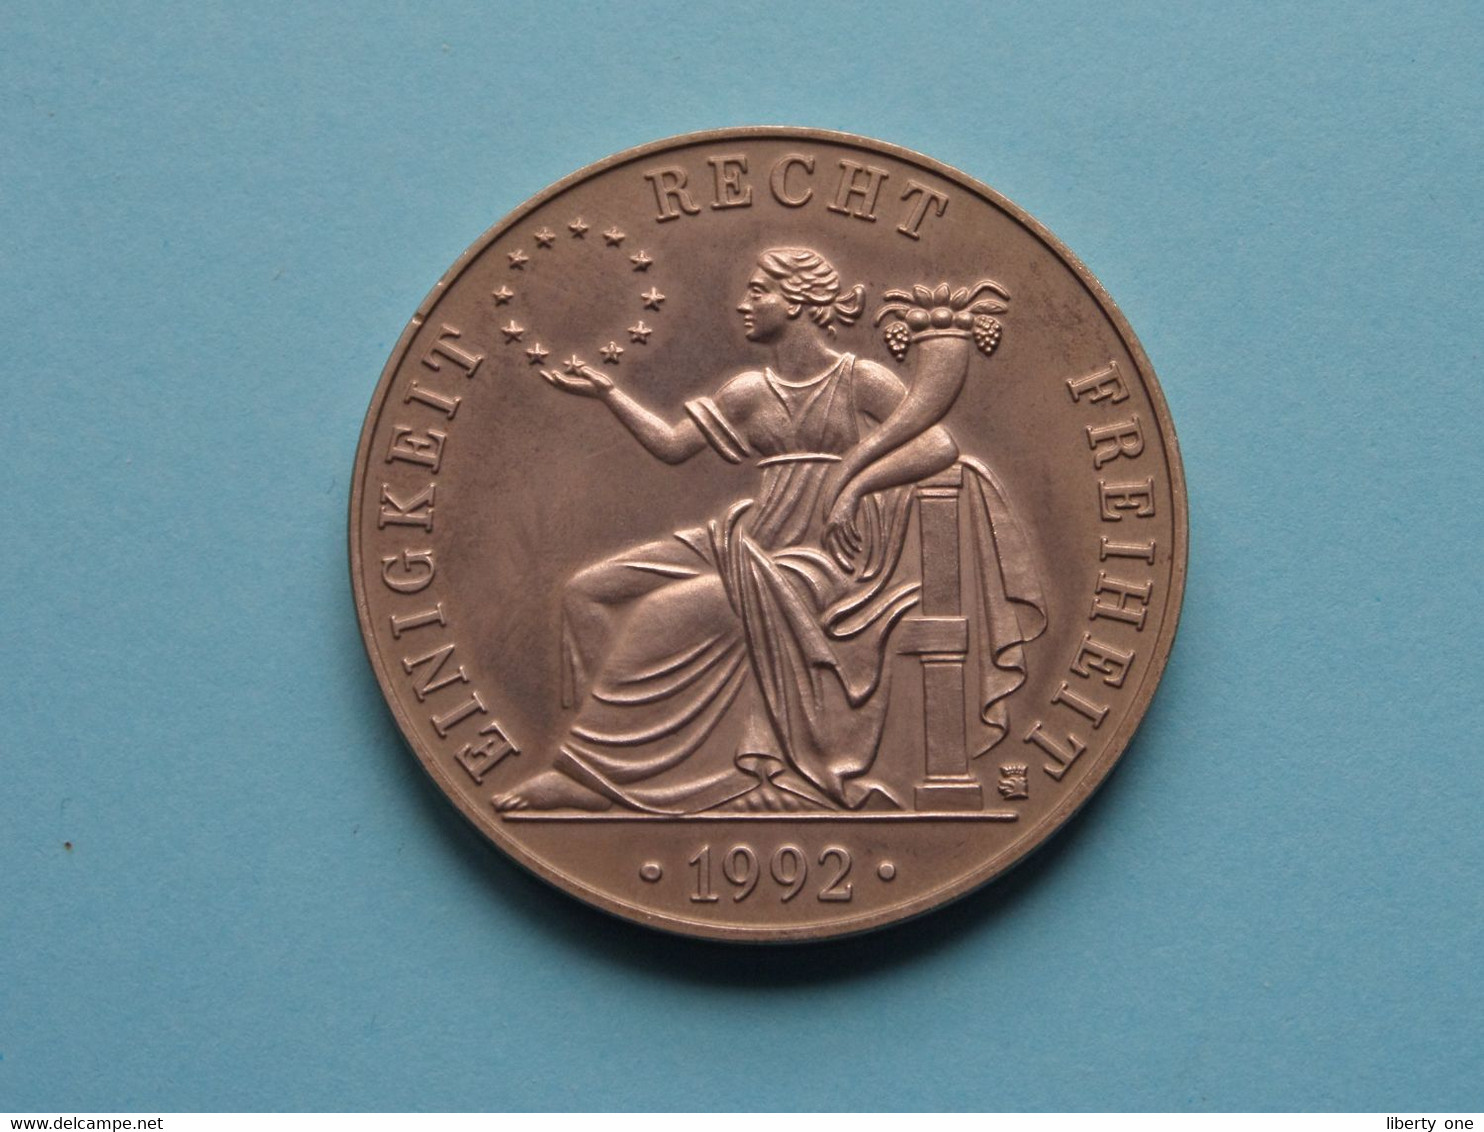 1992 > ECU DEUTSCHLAND - EUROPA Einigkeit / Recht / Freiheit ( For Grade, Please See Photo ) ! - Monedas Elongadas (elongated Coins)